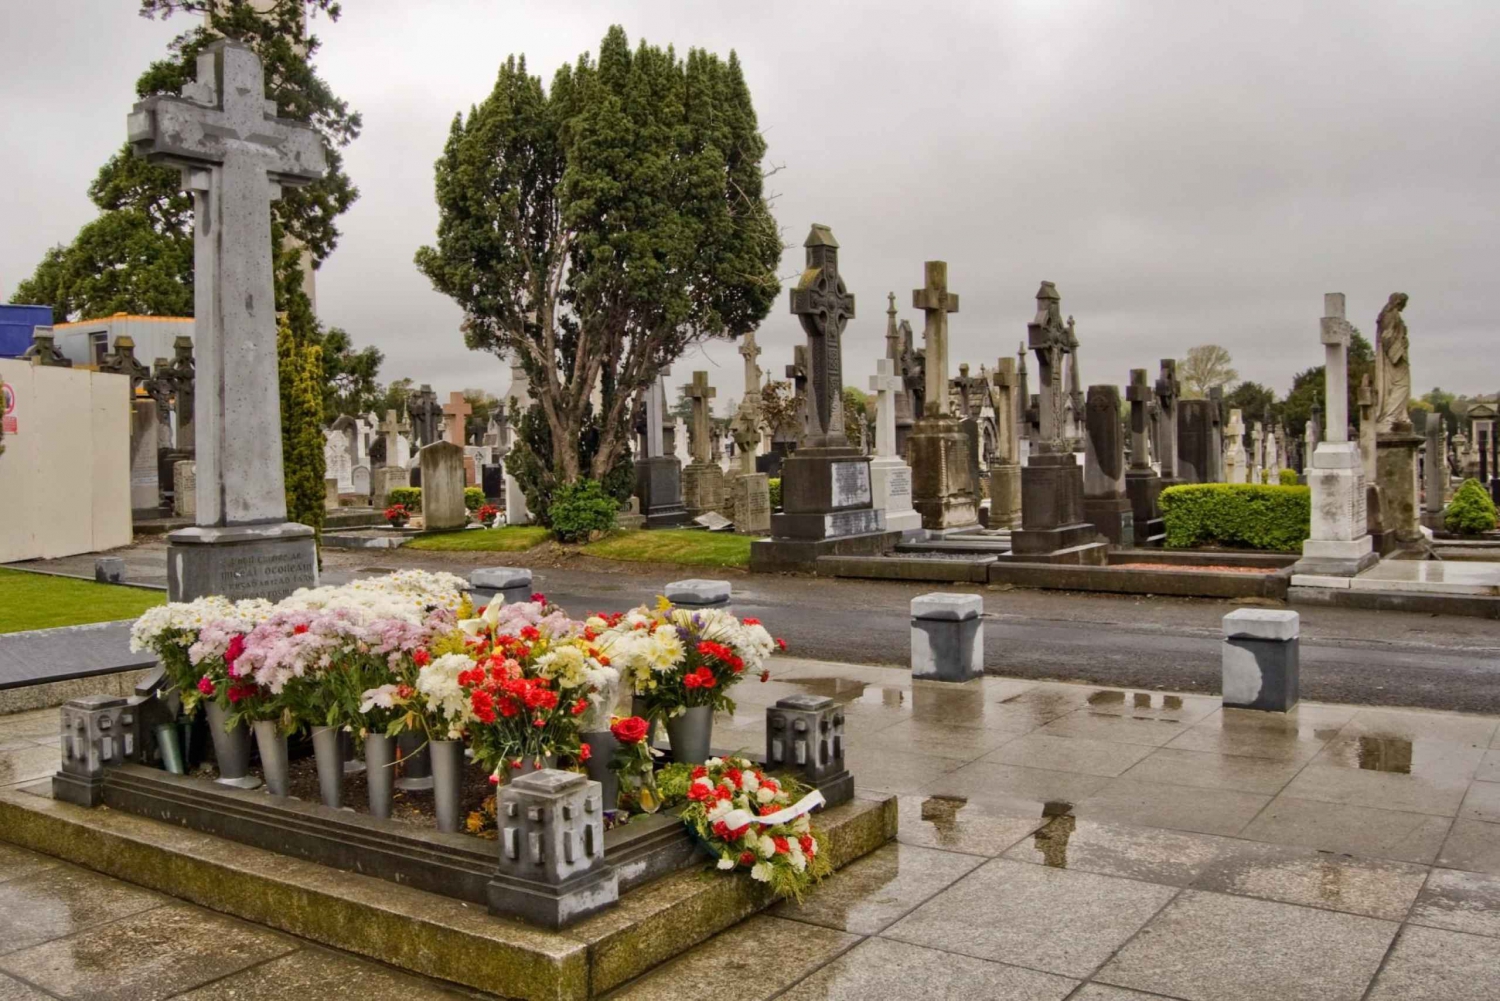 Dublin Glasnevinin kansallinen hautausmaa Audio Tour kuljetuksineen